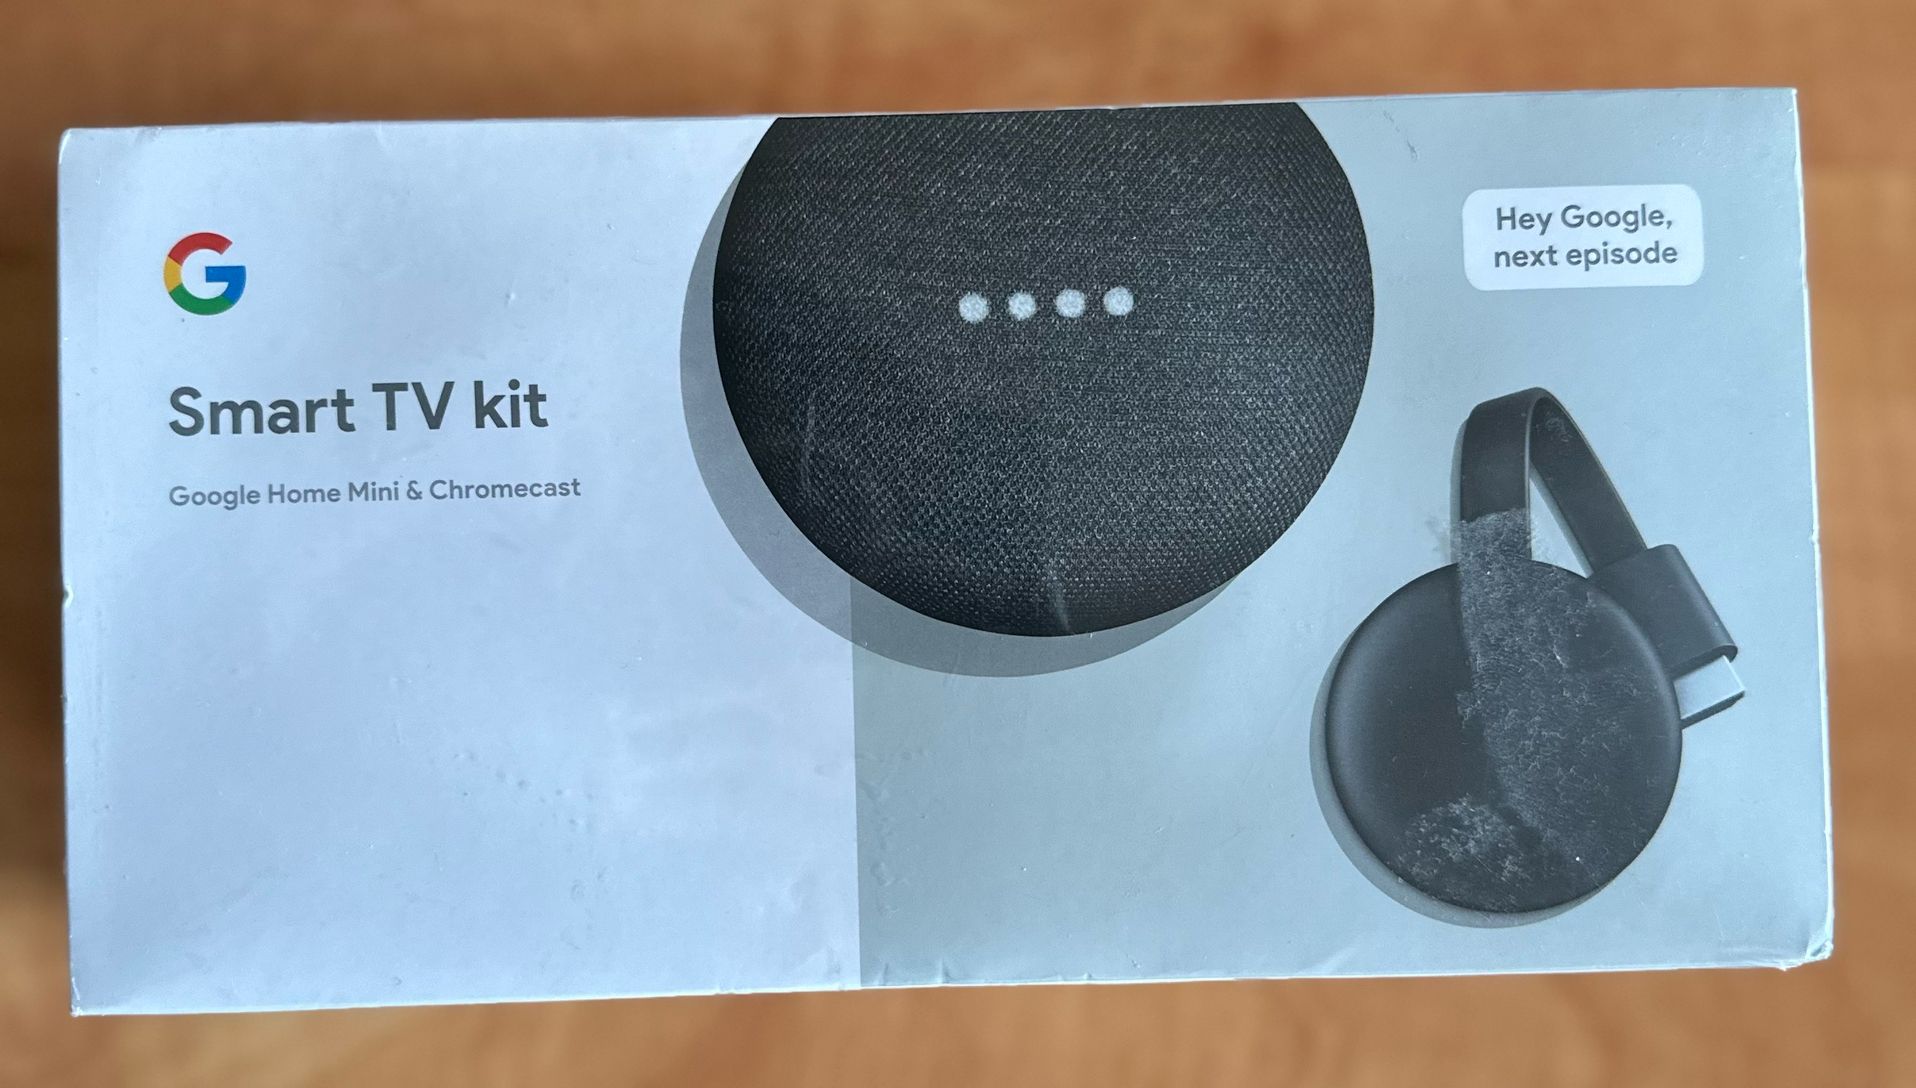 Google Smart TV Kit: Google Home Mini and Chromecast Bundle